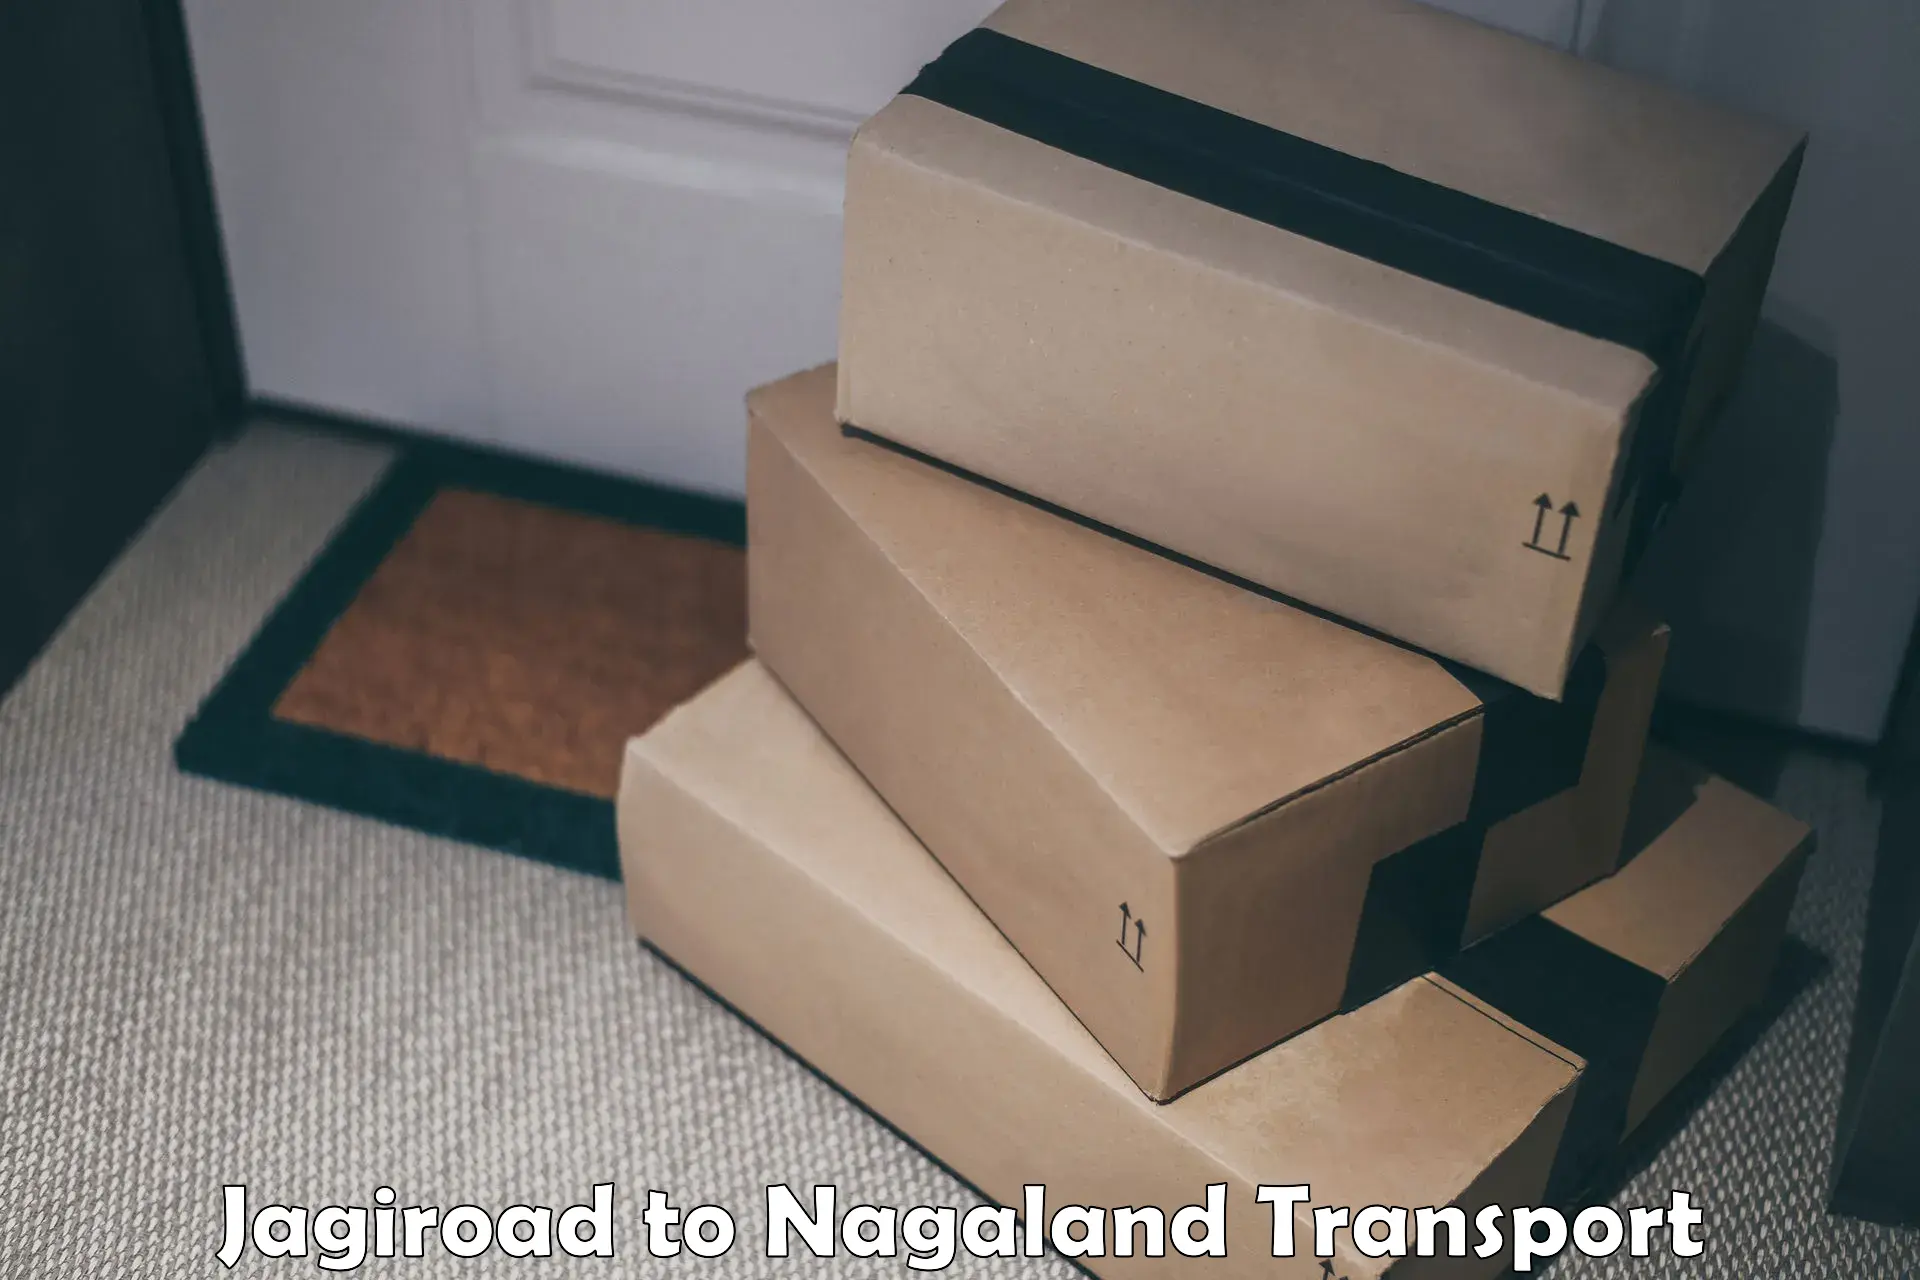 Bike shipping service Jagiroad to Nagaland